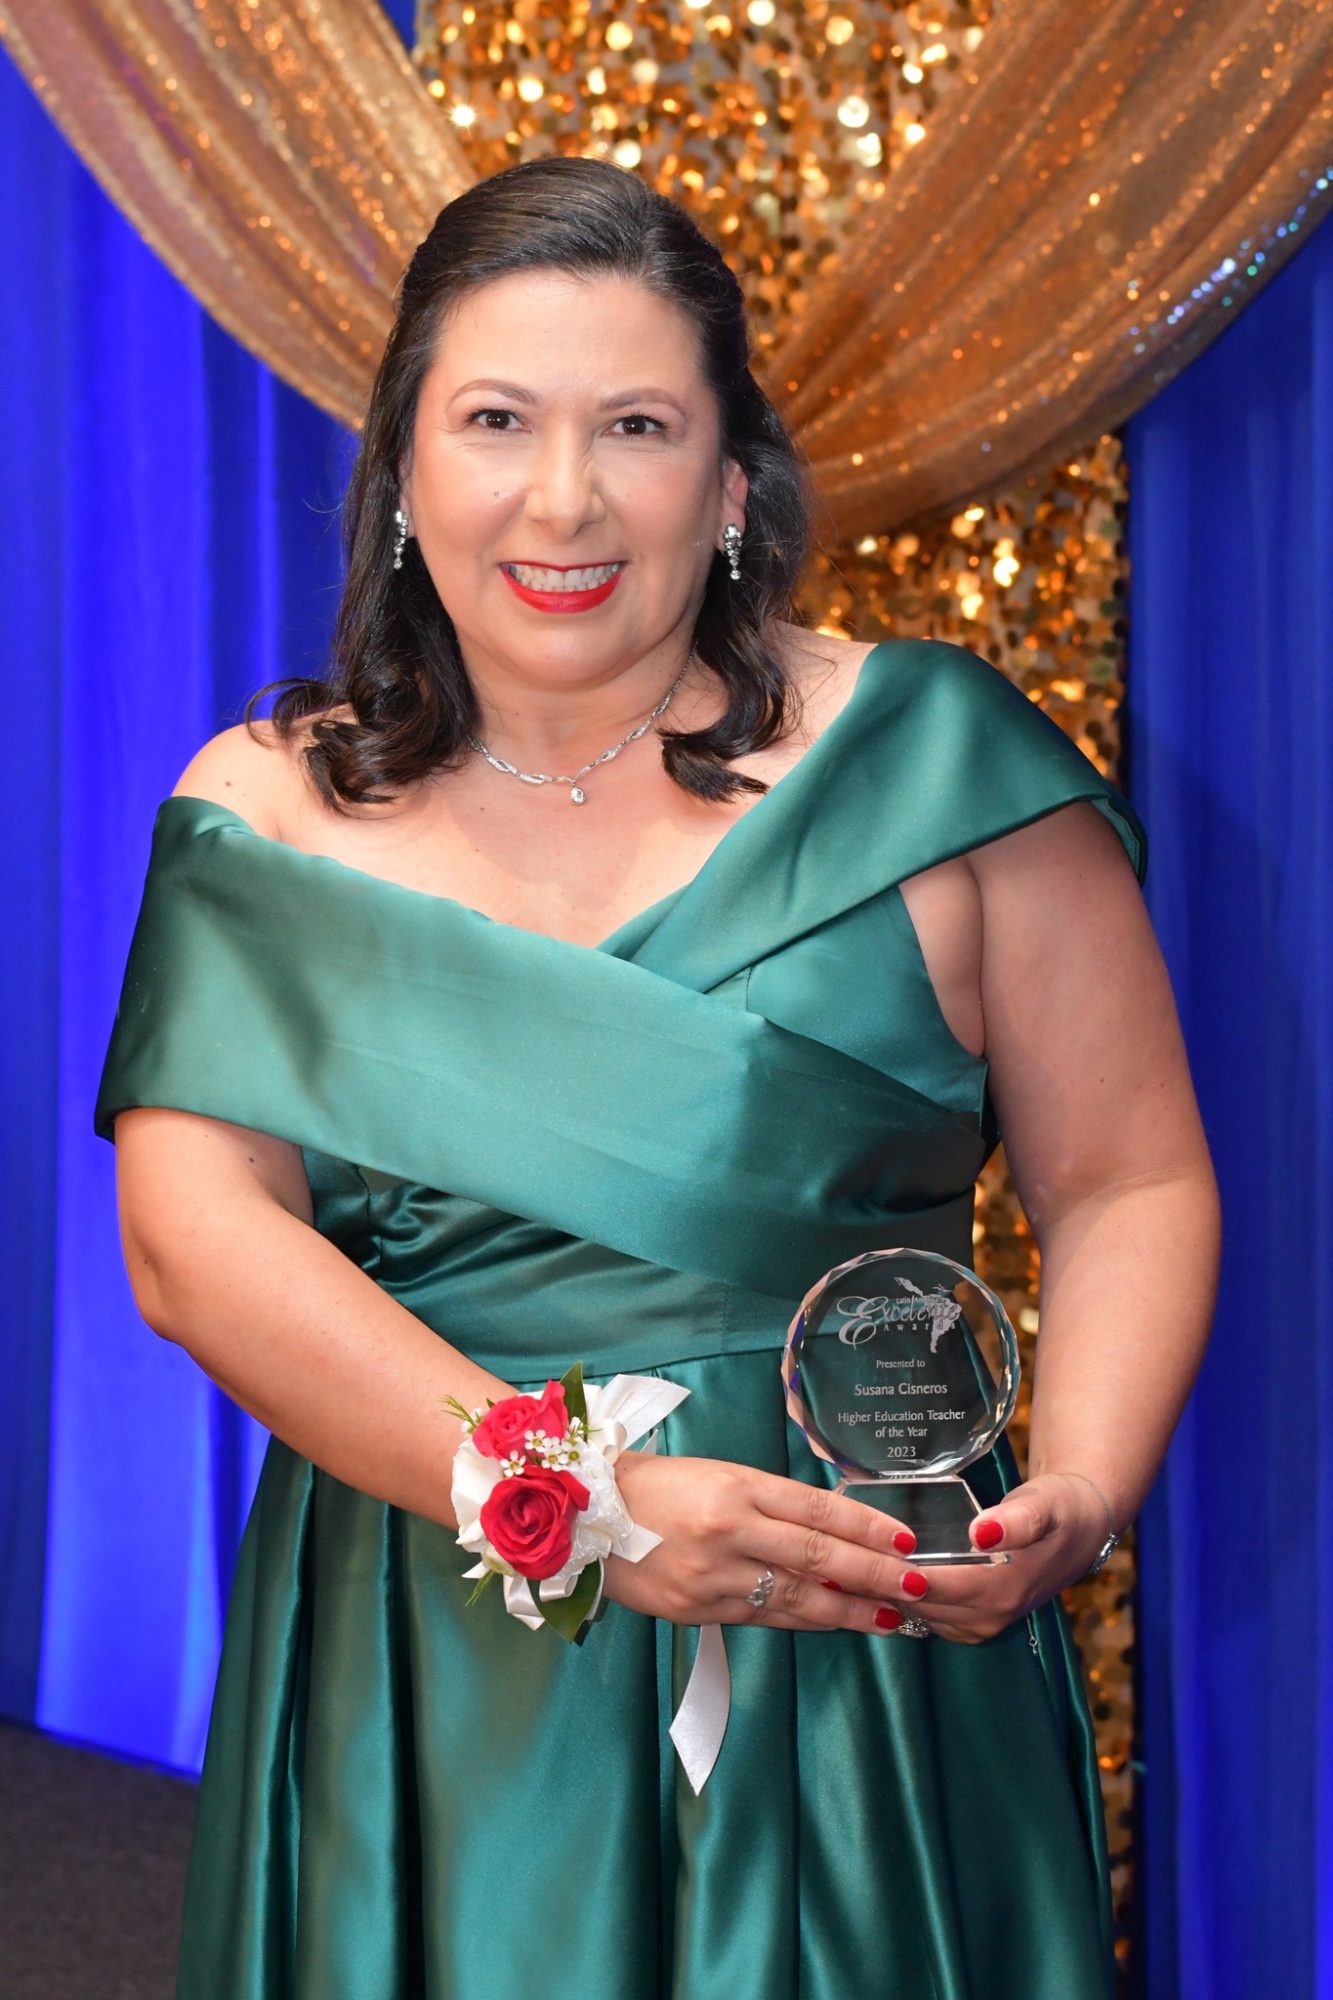 Susanna Cineros receives award from La Noticia.